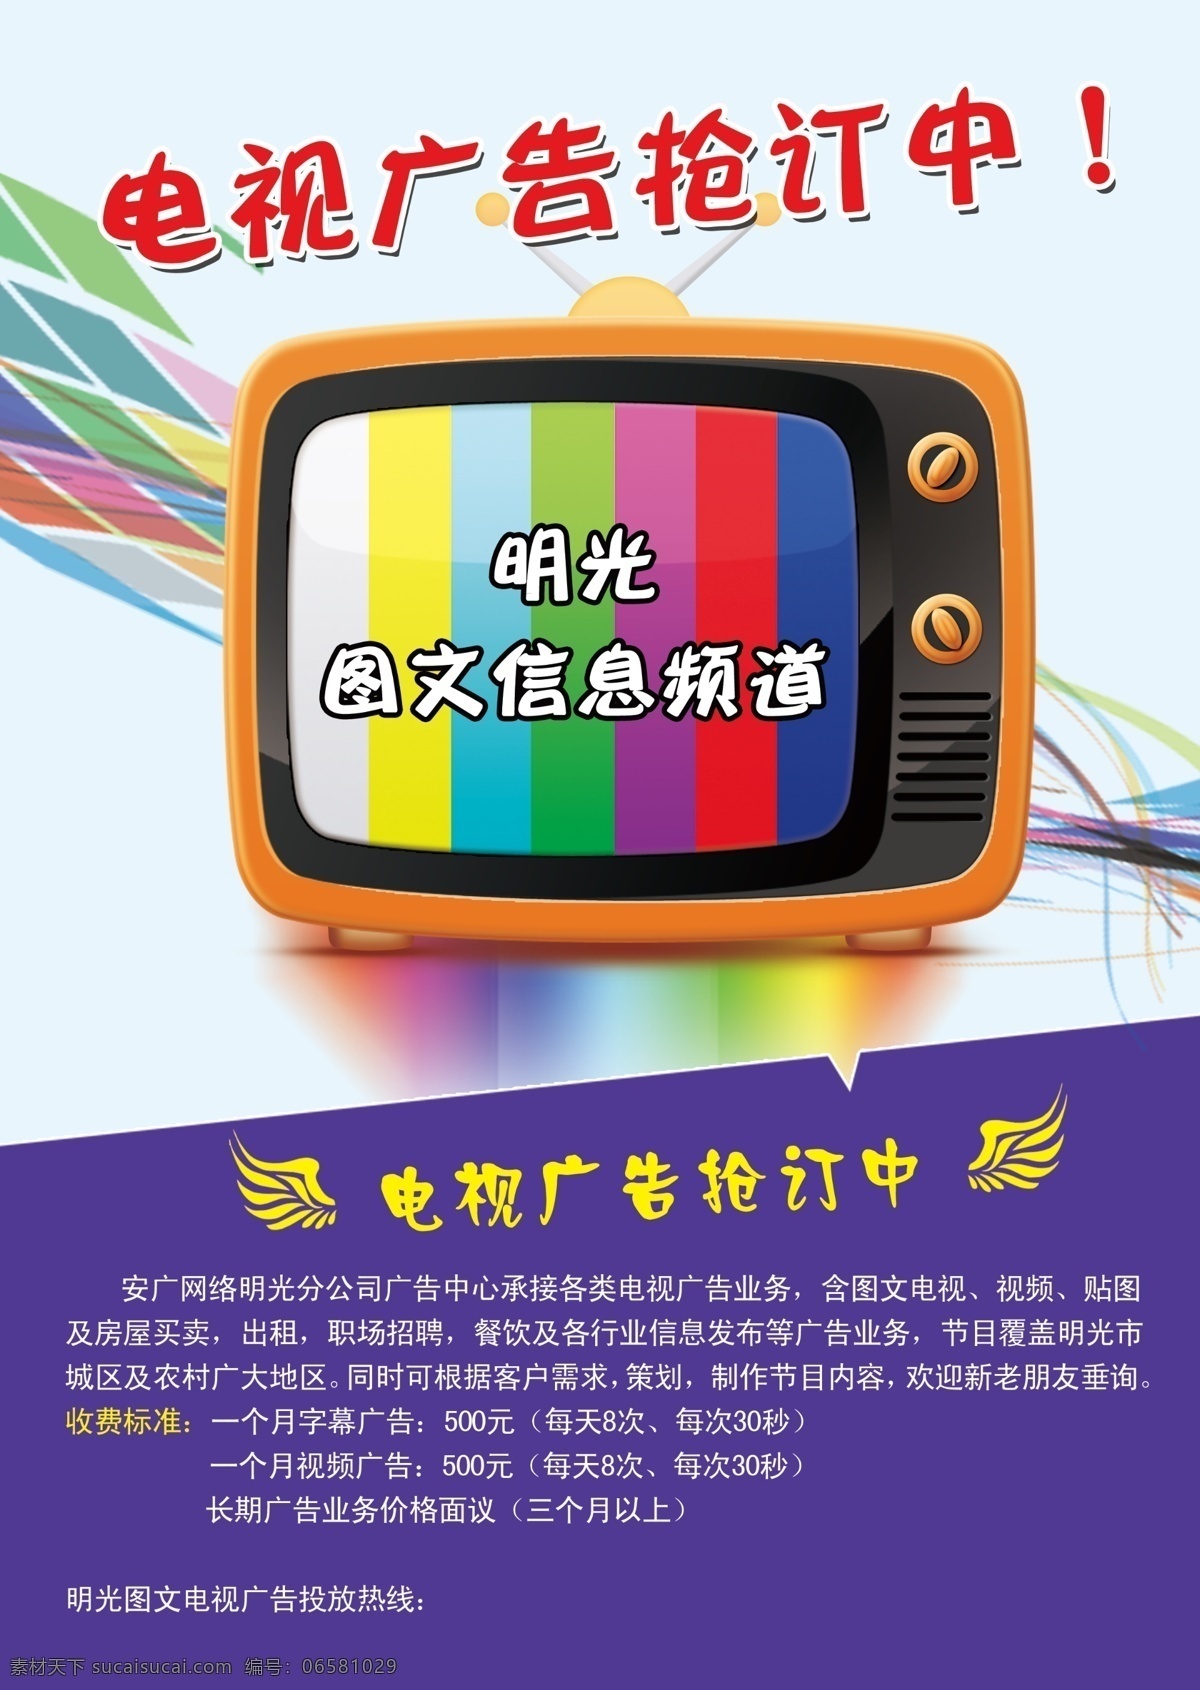 安广网络单页 卡通电视机 彩色线条 翅膀 dm宣传单 广告设计模板 源文件